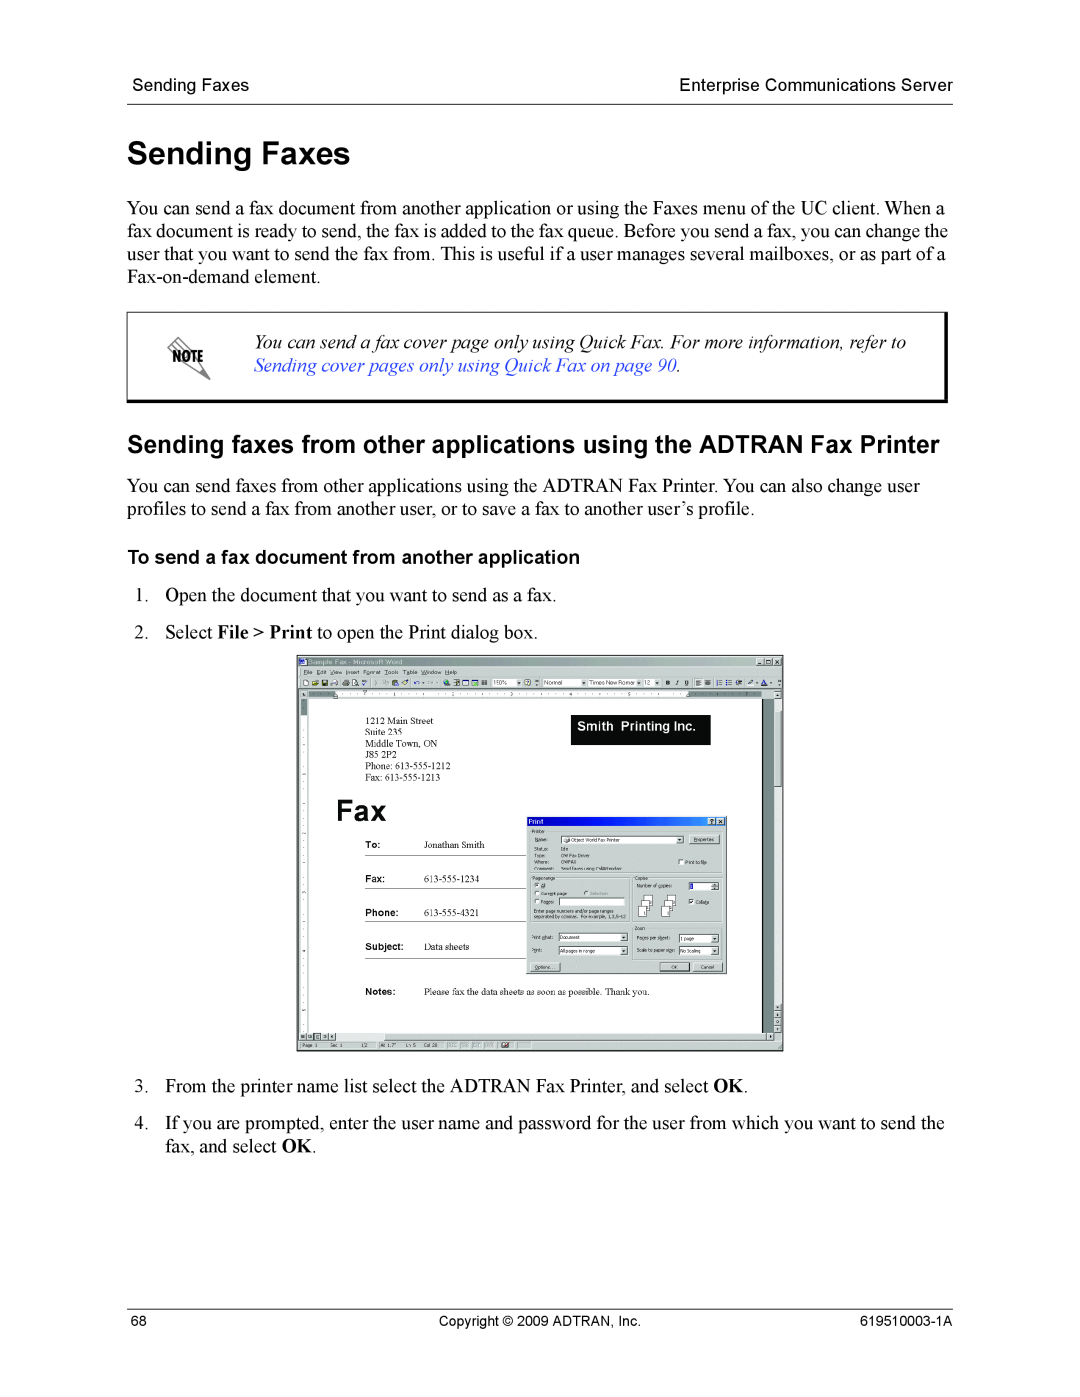 ADTRAN 619510003-1A manual Sending Faxes, Sending faxes from other applications using the ADTRAN Fax Printer 